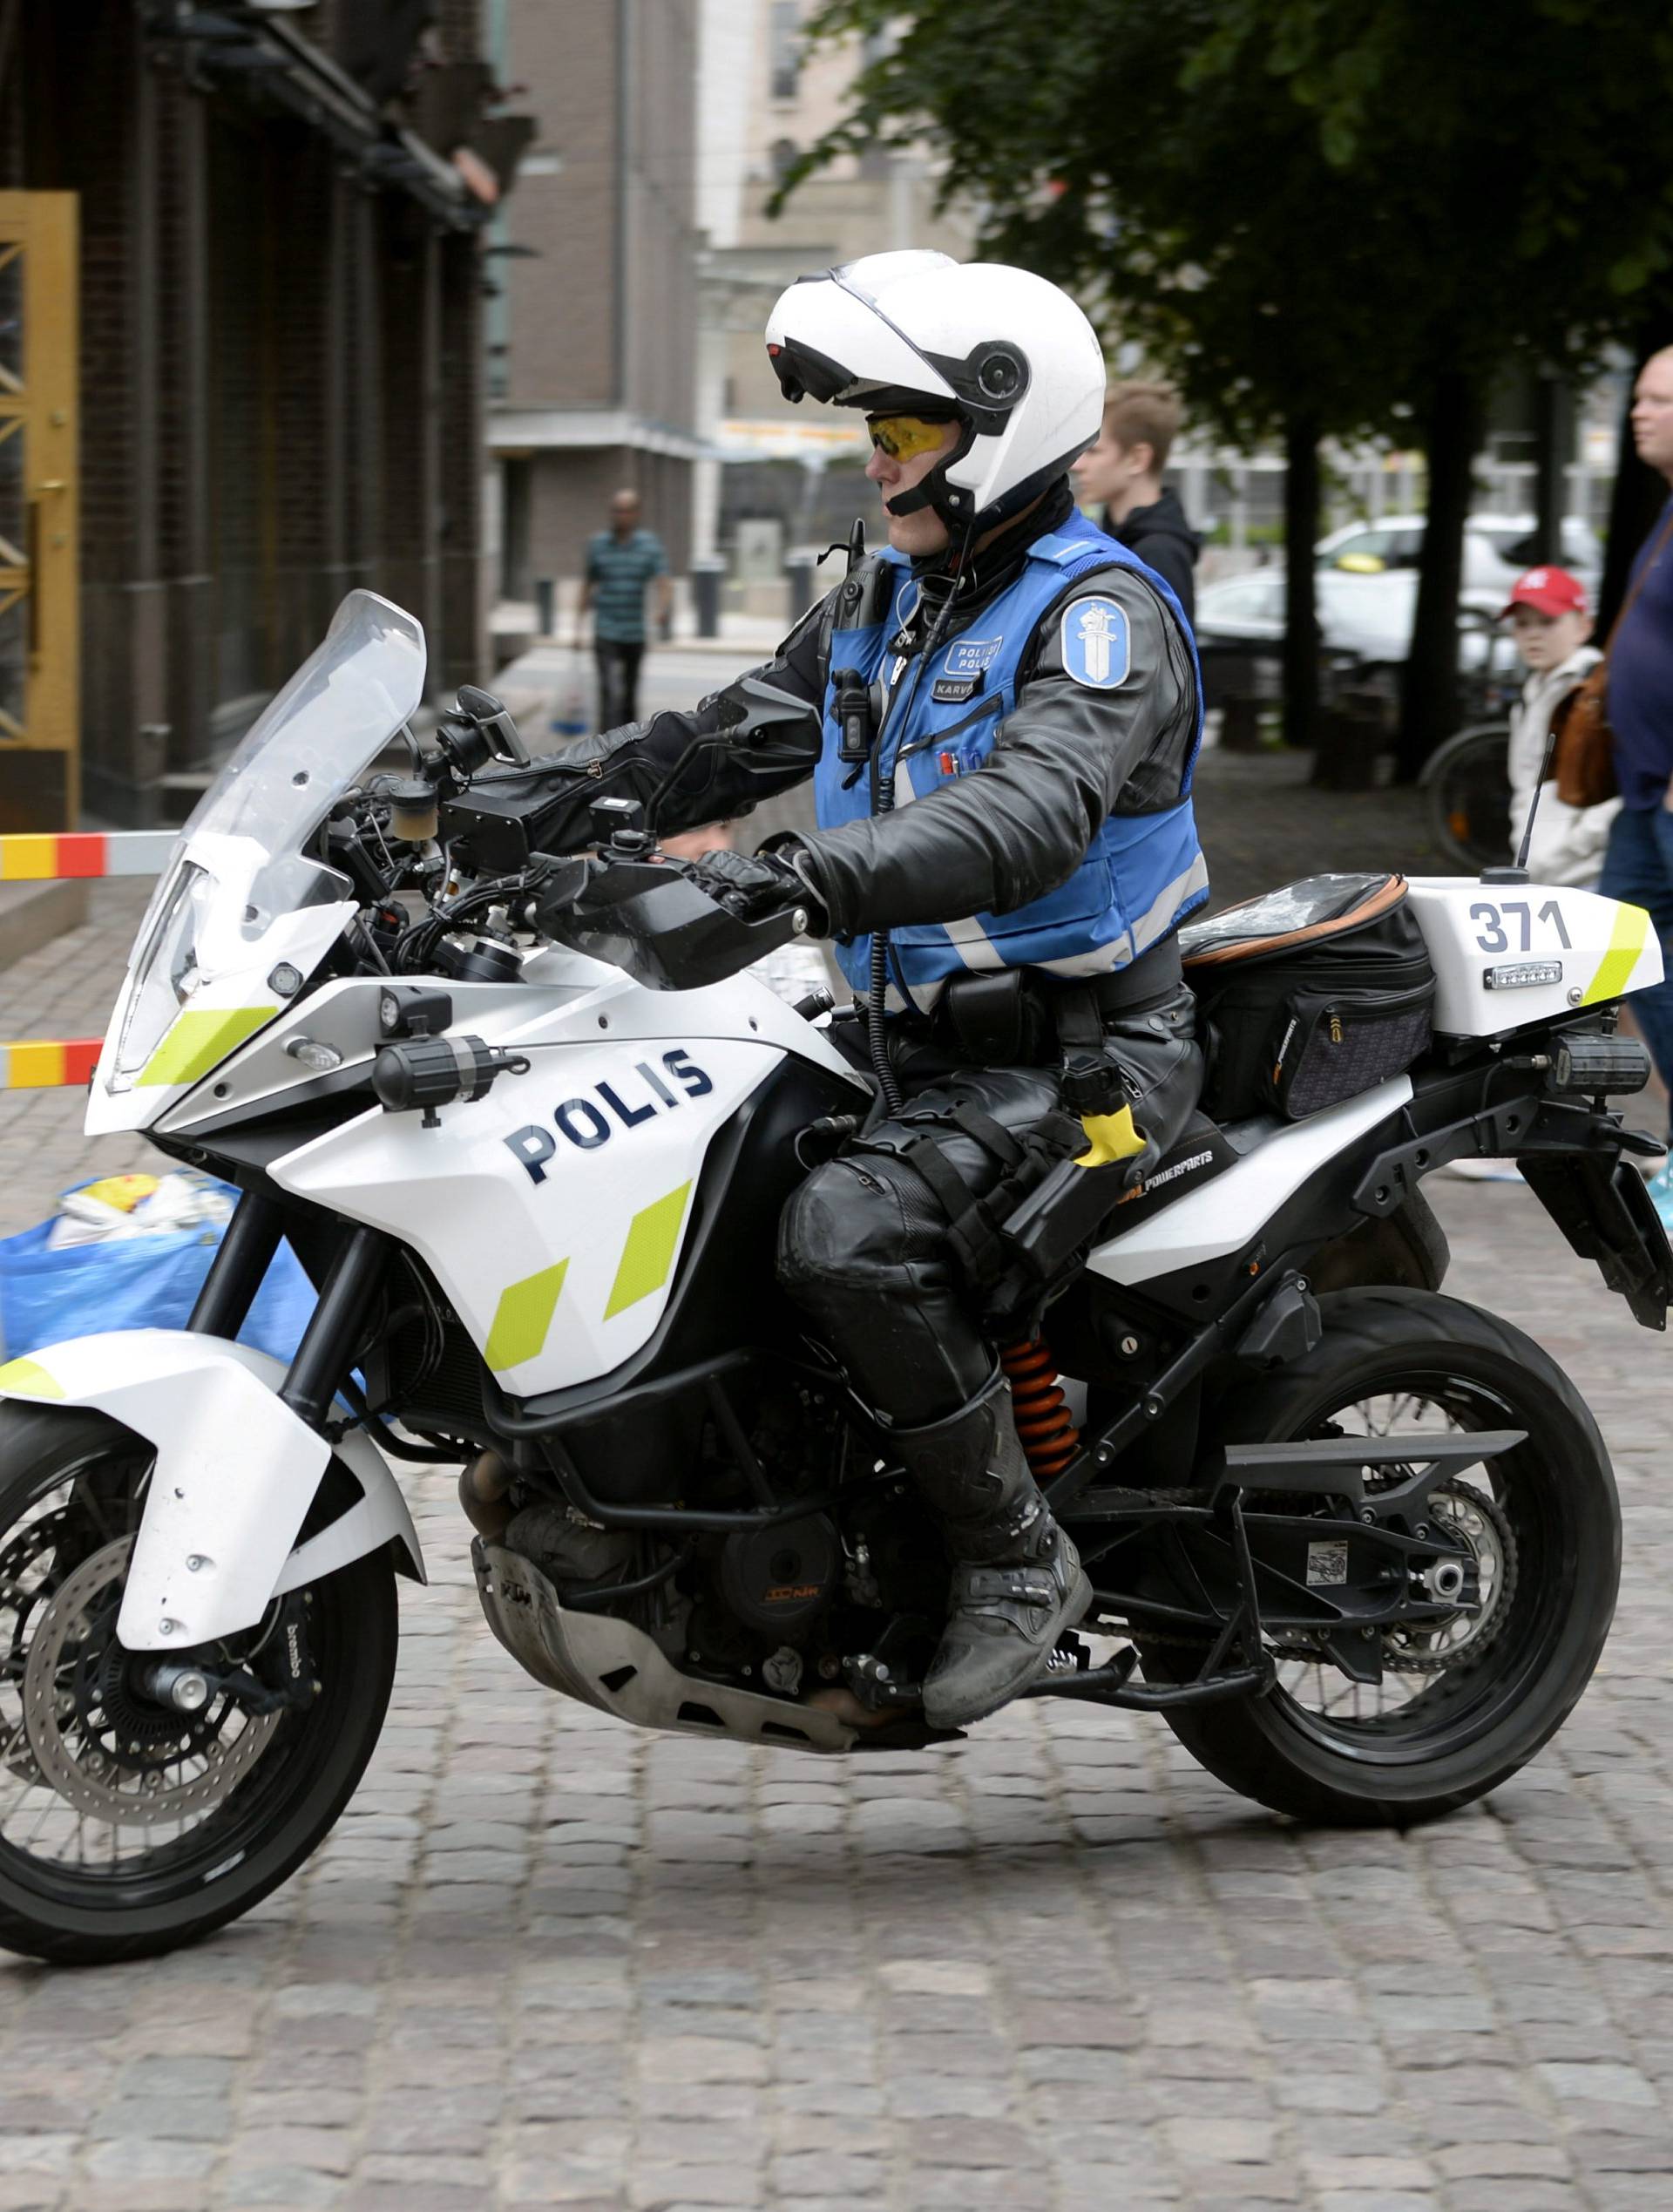 Finnish police patrols on motorbike after stabbings in Turku, in Central Helsinki